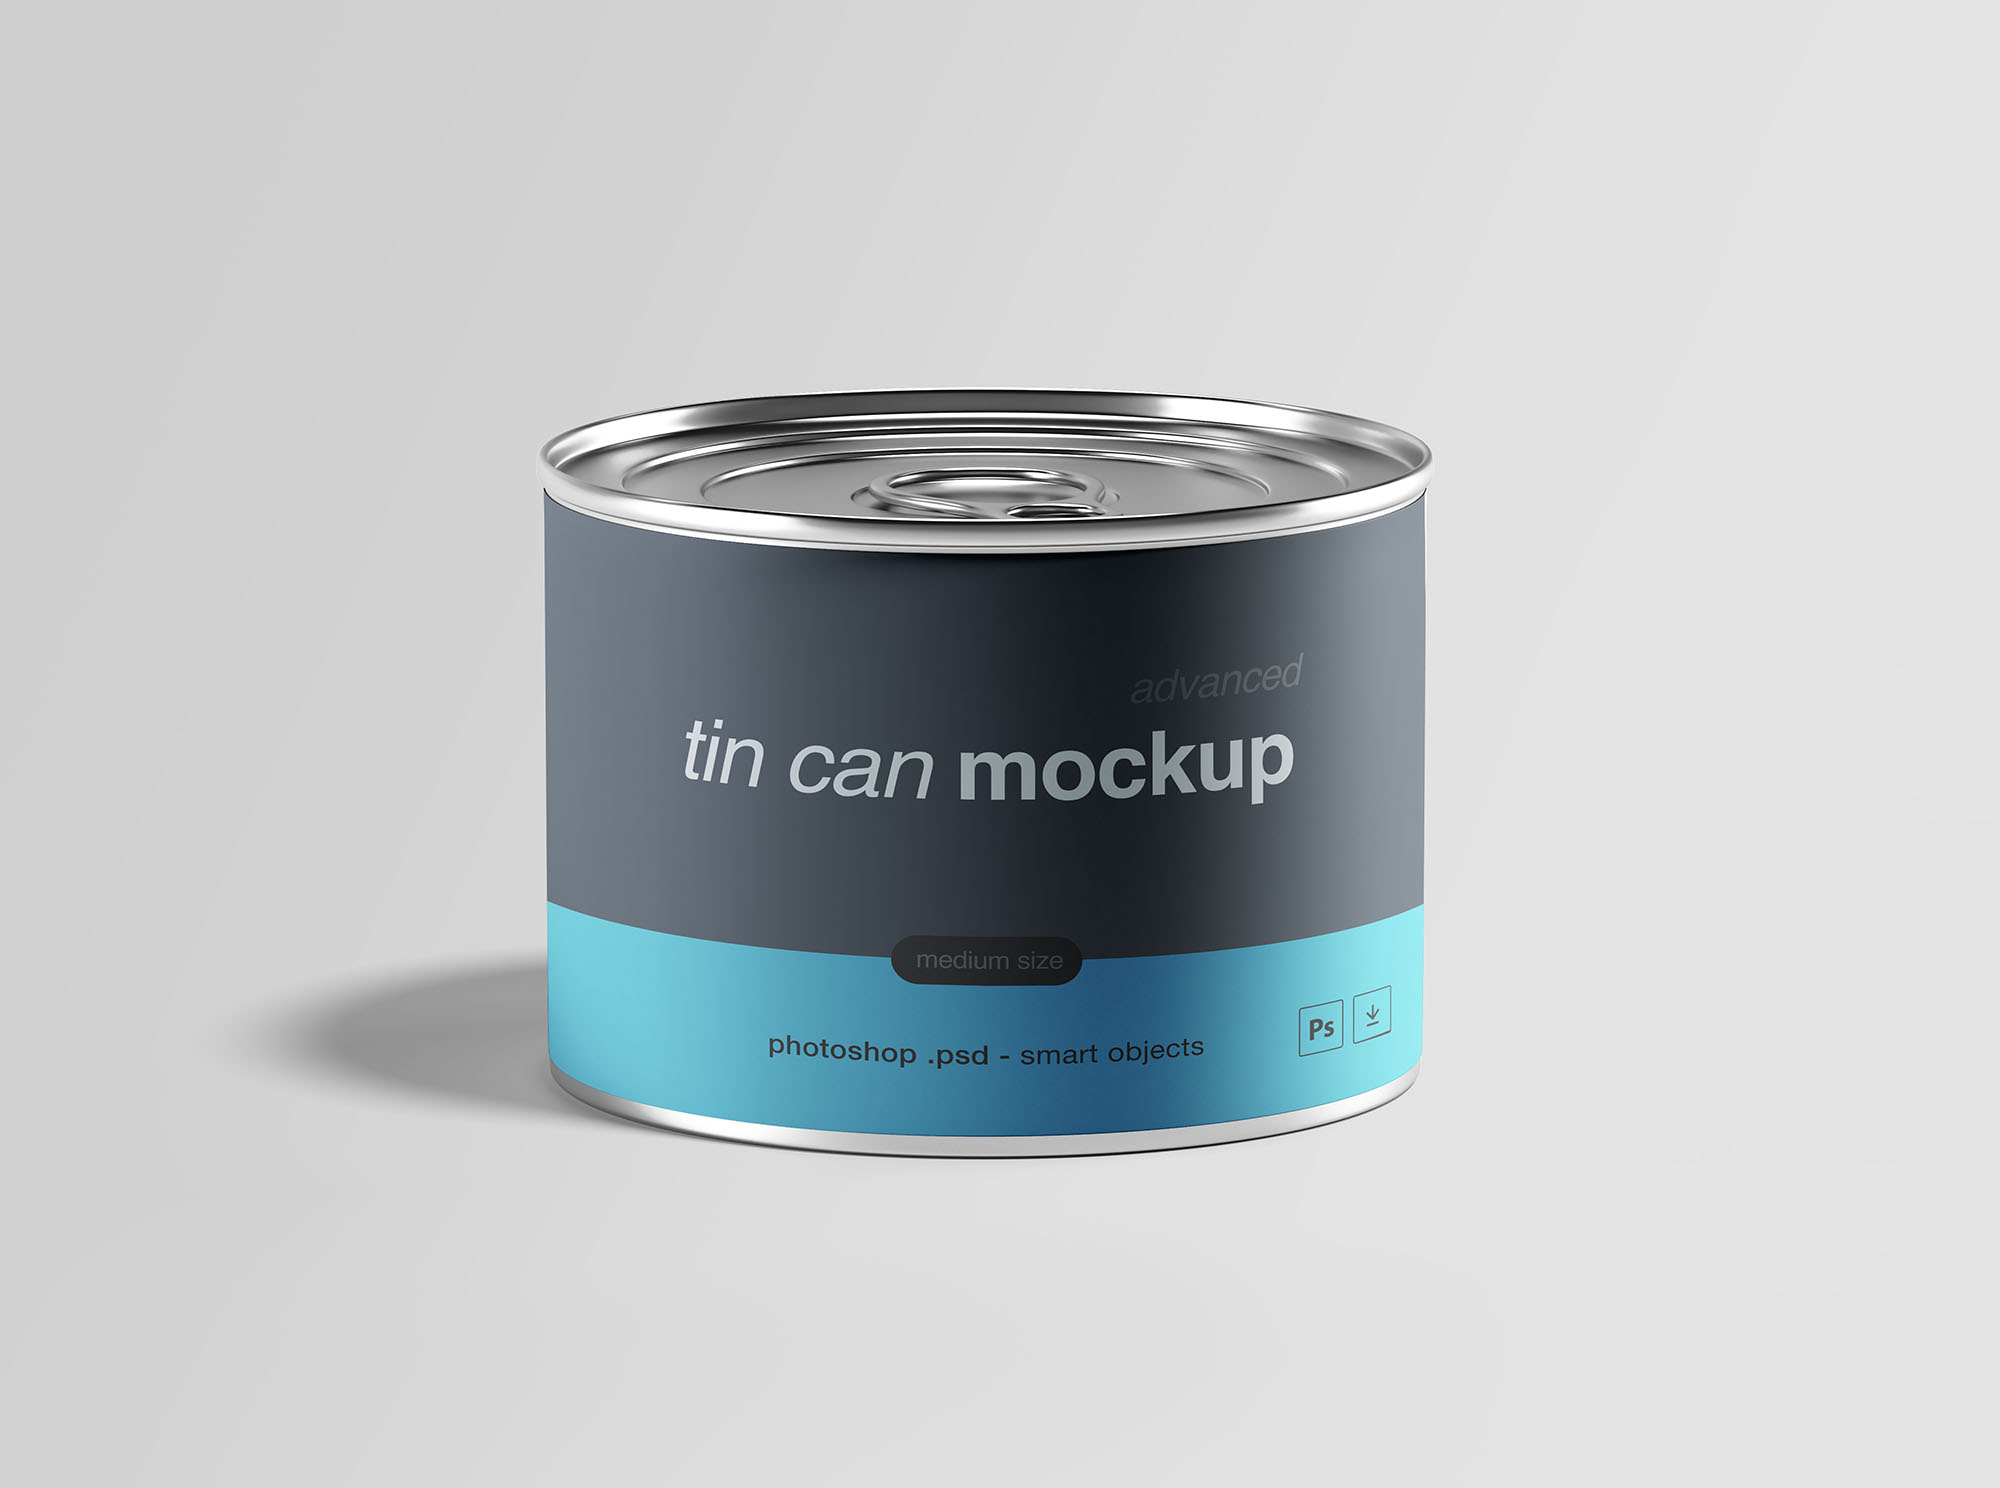 中型锡罐食品罐头外观设计样机模板 Medium Tin Can Mockup插图(1)